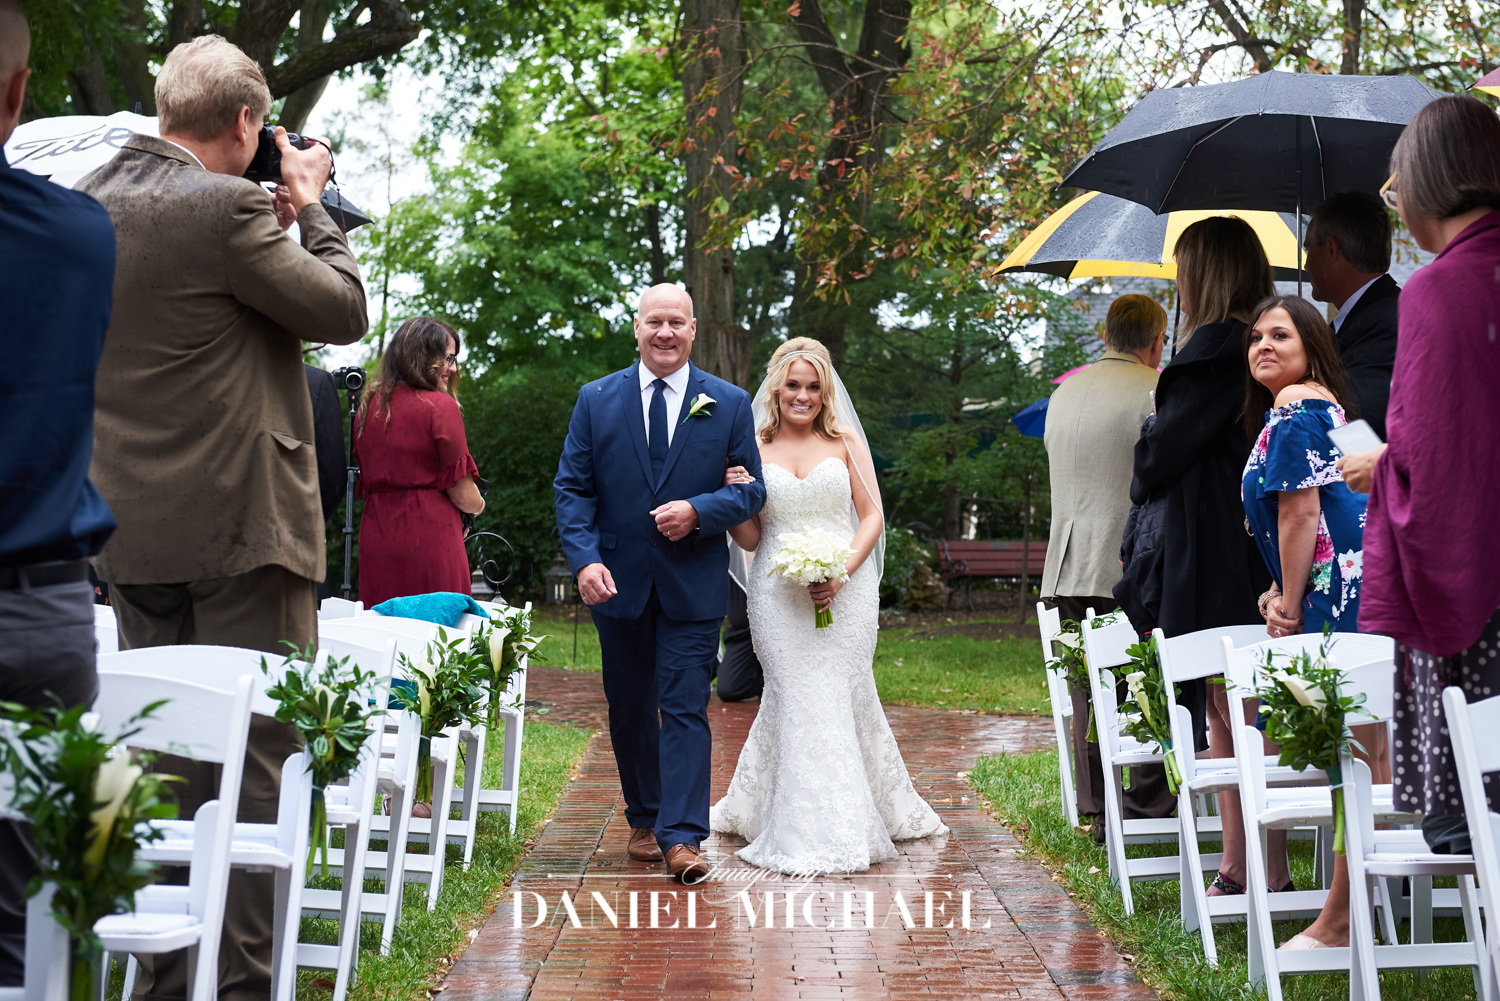 Wedding Ceremony in the Rain